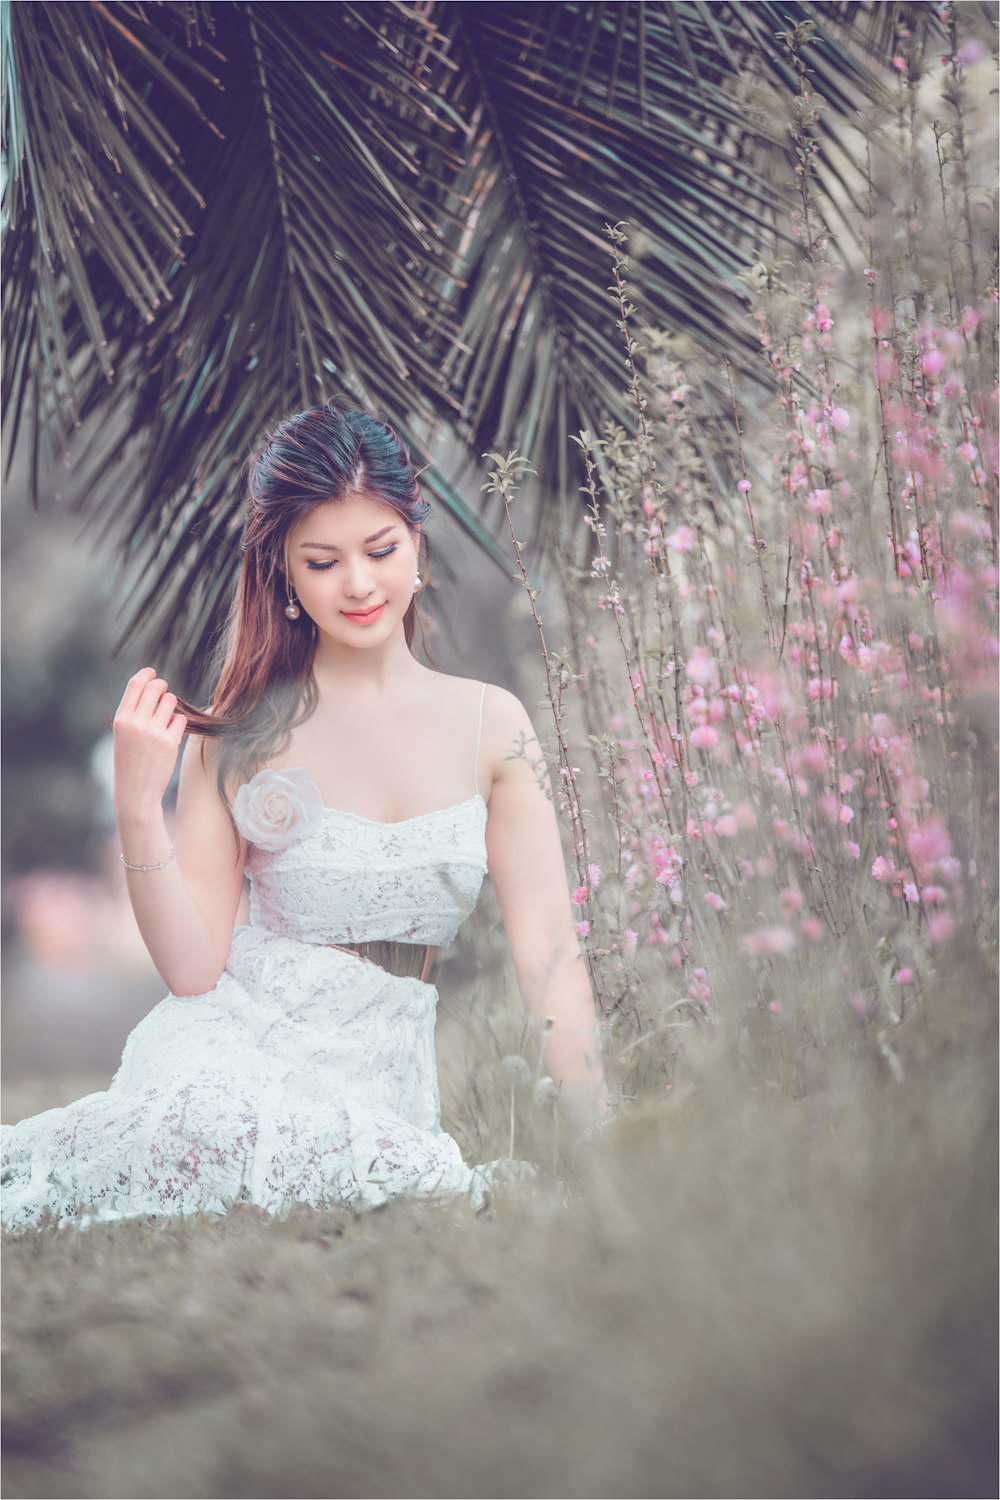 una mujer con un vestido blanco sentada bajo una palmera